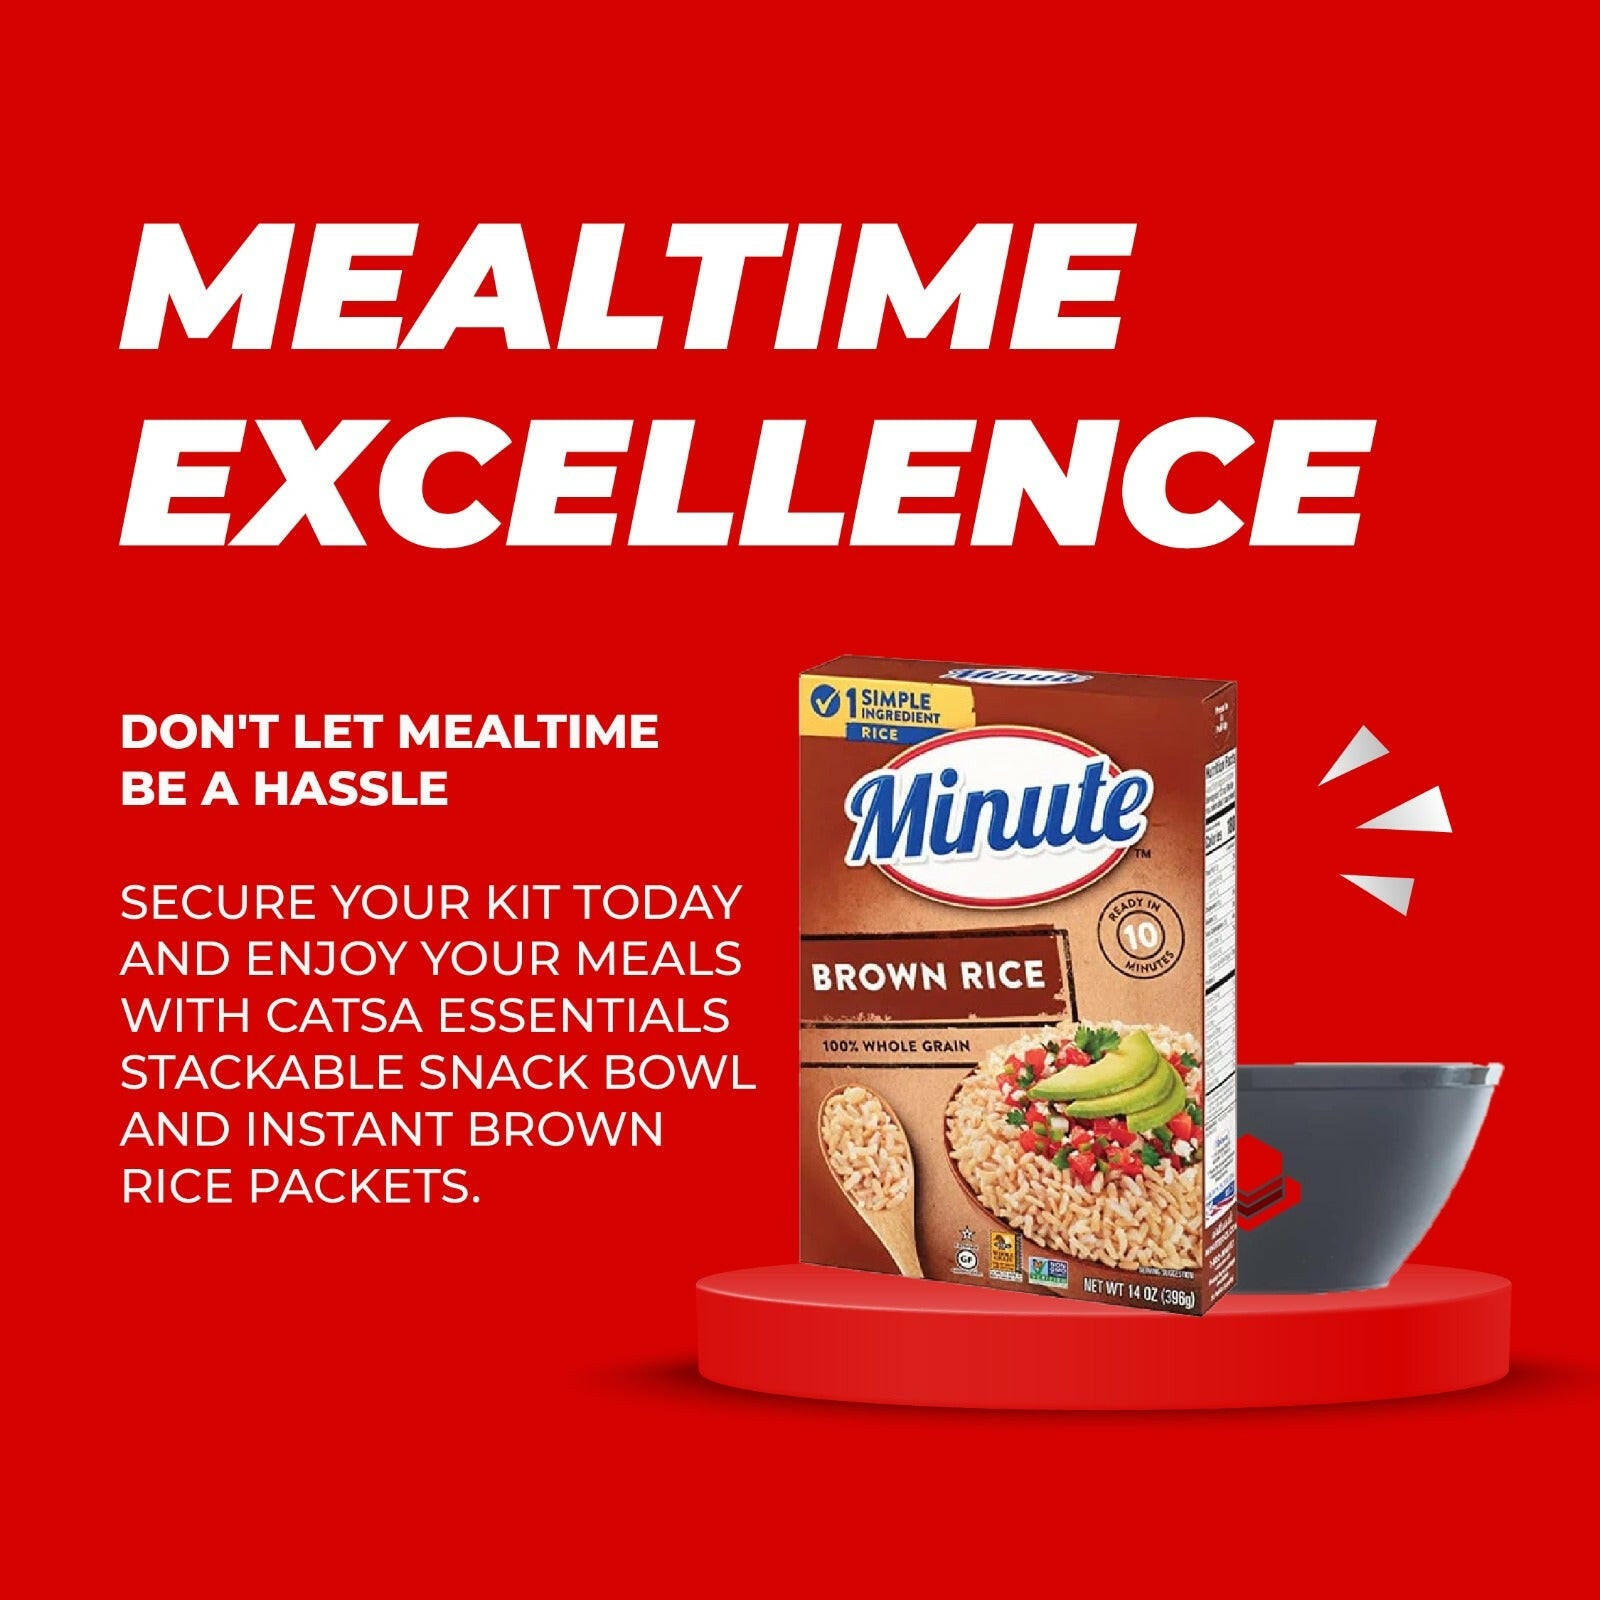 3 Minute Instant Brown Rice, Gluten Free, Non-GMO, 14 oz + 1 Catsa Essentials Plastic Stackable Snack Bowl 28 oz with Catsa Essentials Pack Box